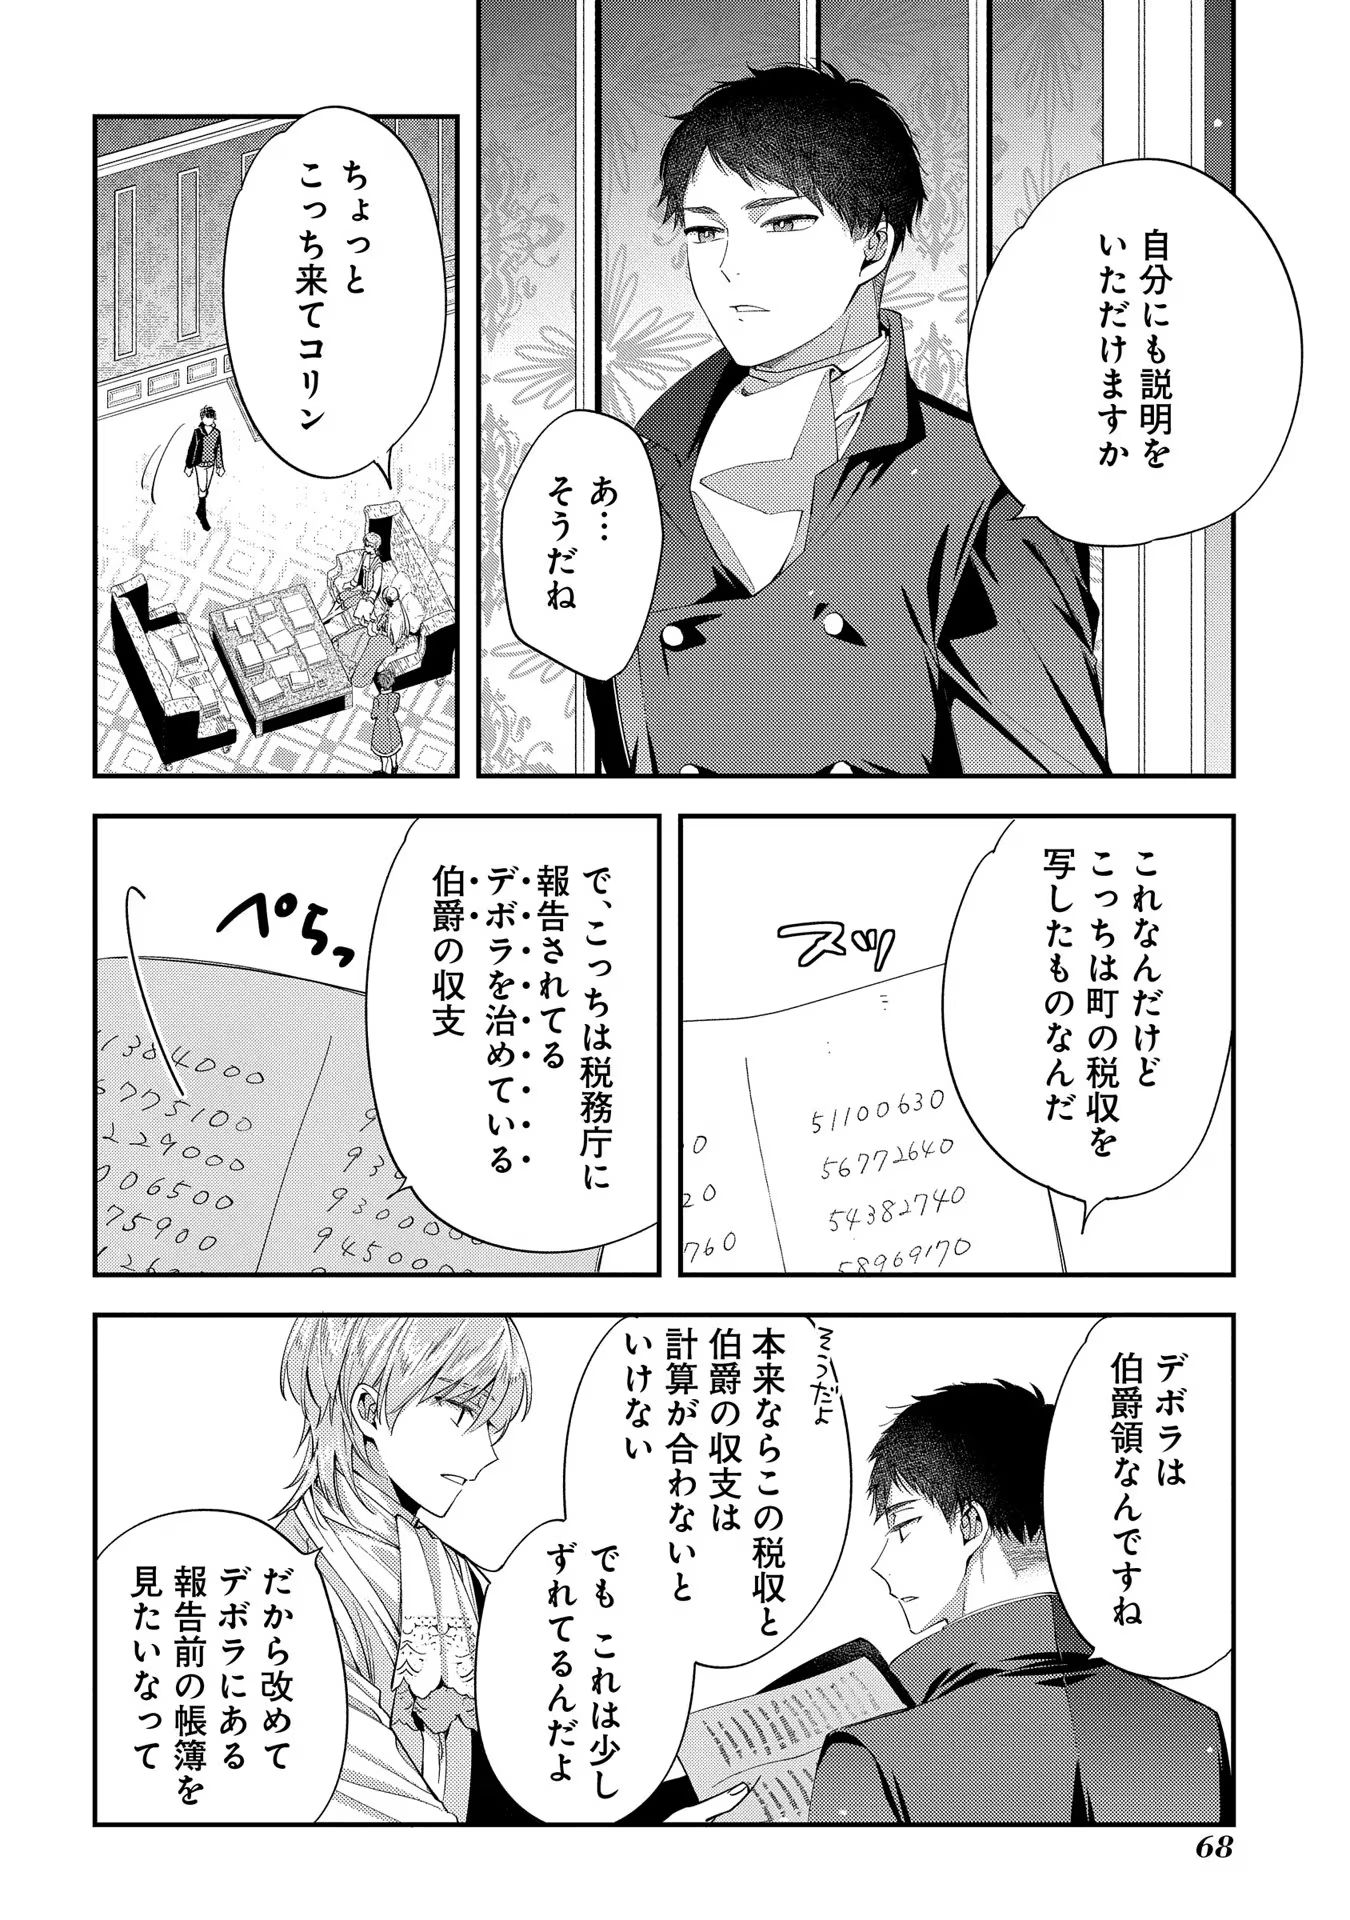 Outaishi ni Konyaku Hakisareta no de, Mou Baka no Furi wa Yameyou to Omoimasu - Chapter 13 - Page 2